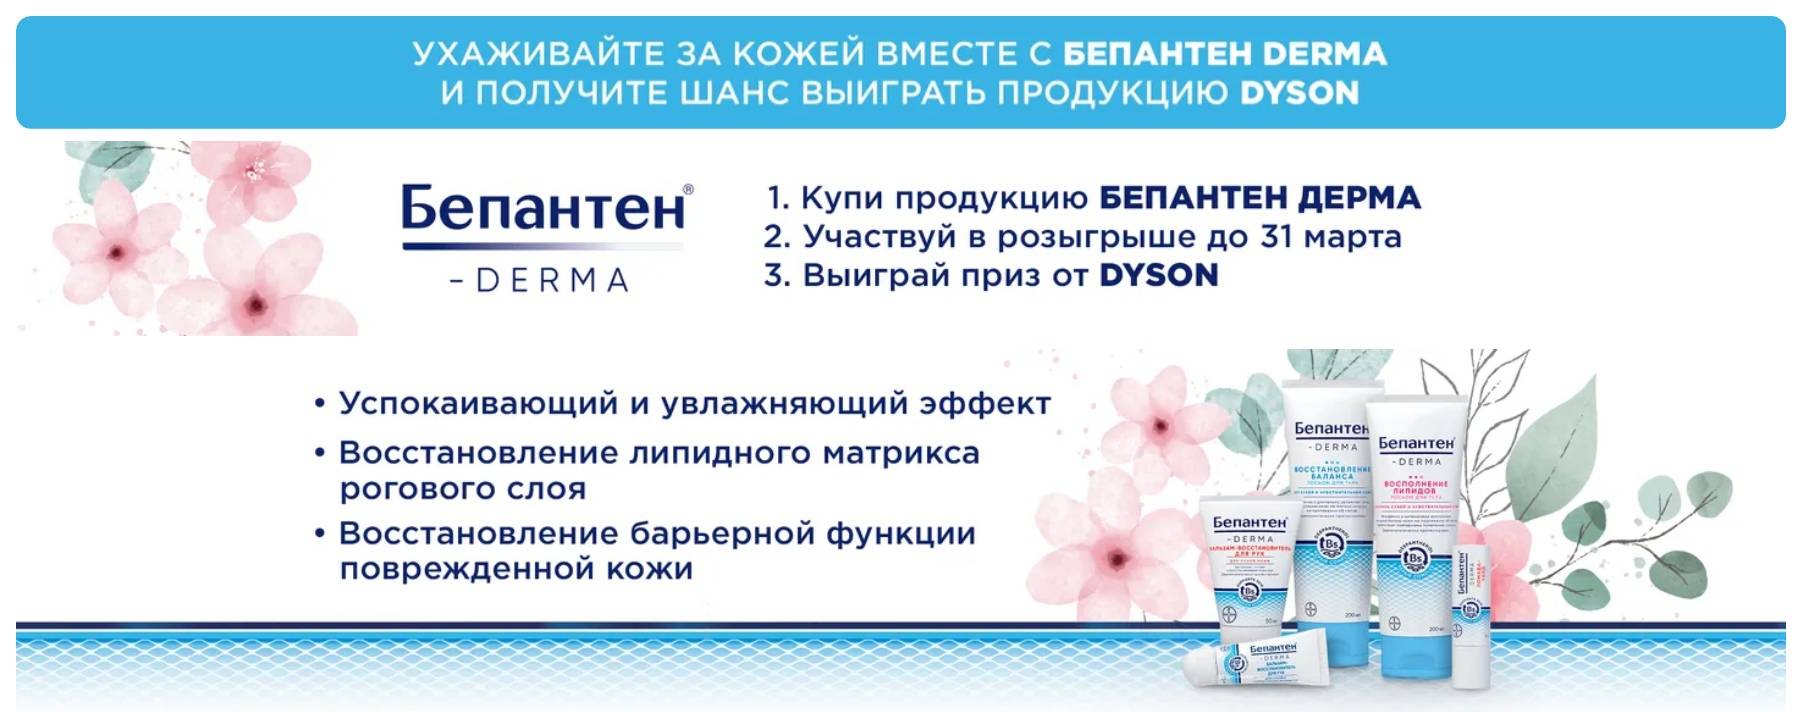 Промо-акция Бепантен и Ozon.ru: «Подарки от Бепантен»